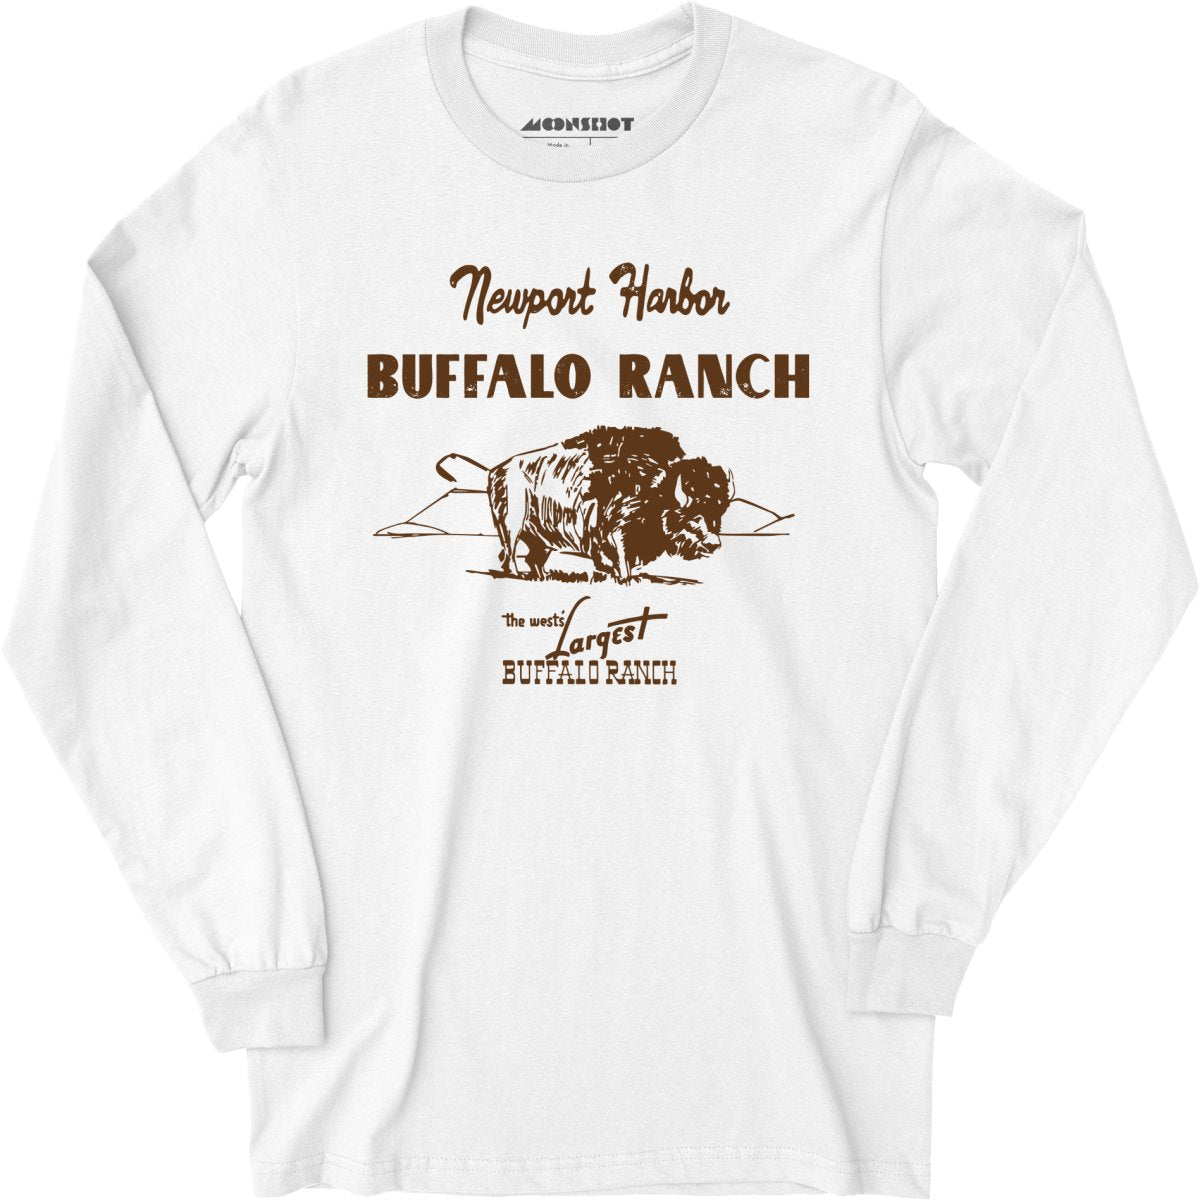 Newport Harbor Buffalo Ranch - Newport Beach, CA - Long Sleeve T-Shirt